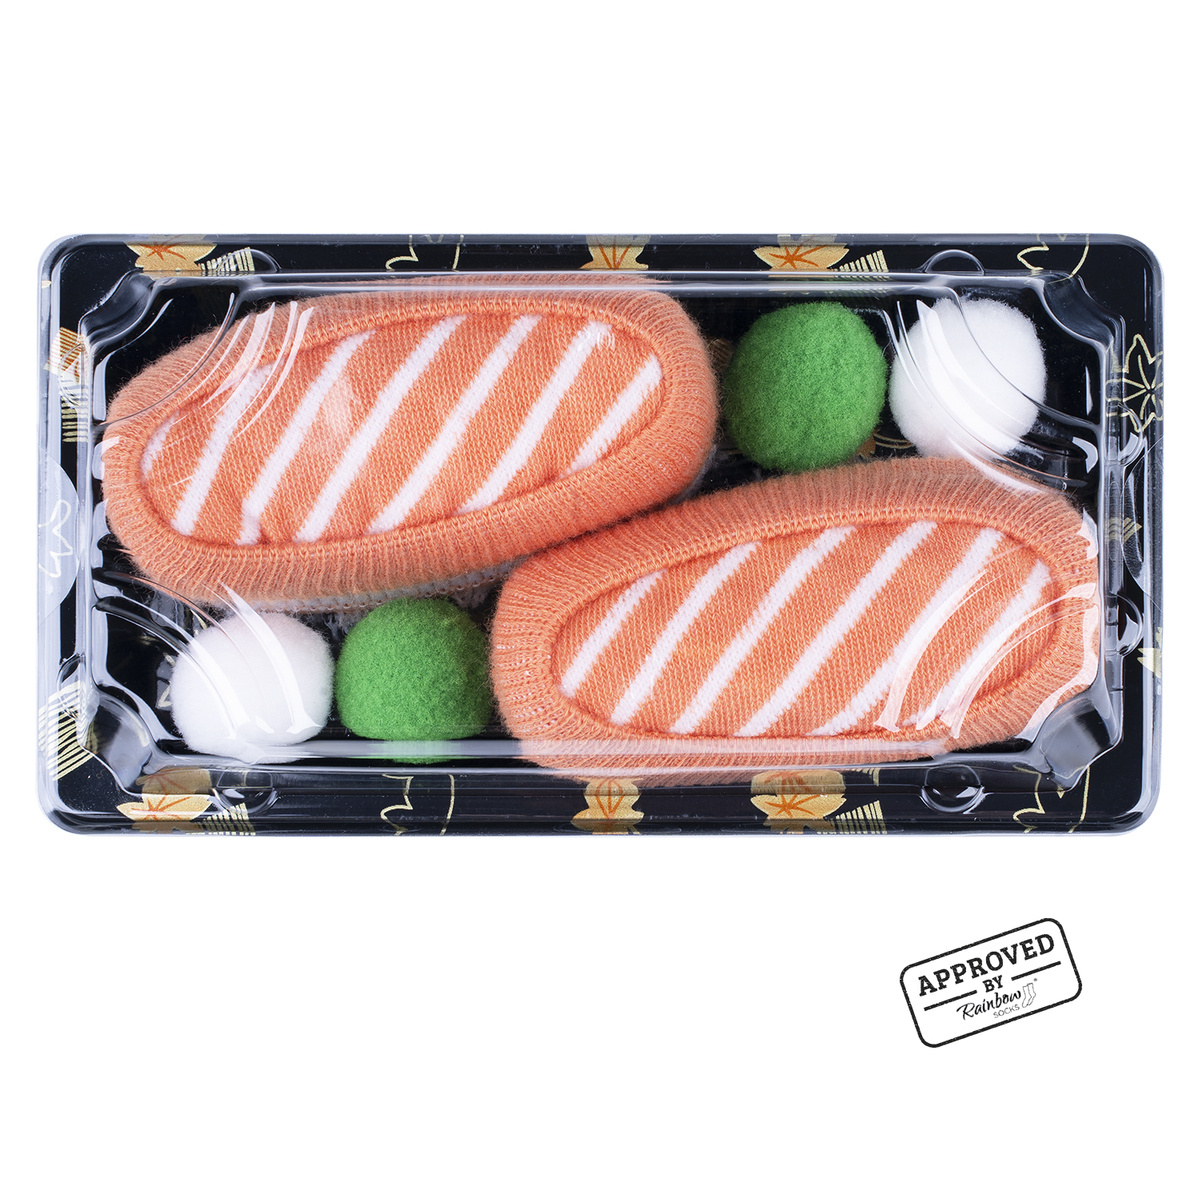 Calzini da donna da uomo colorati SOXO sushi - 15,99 €